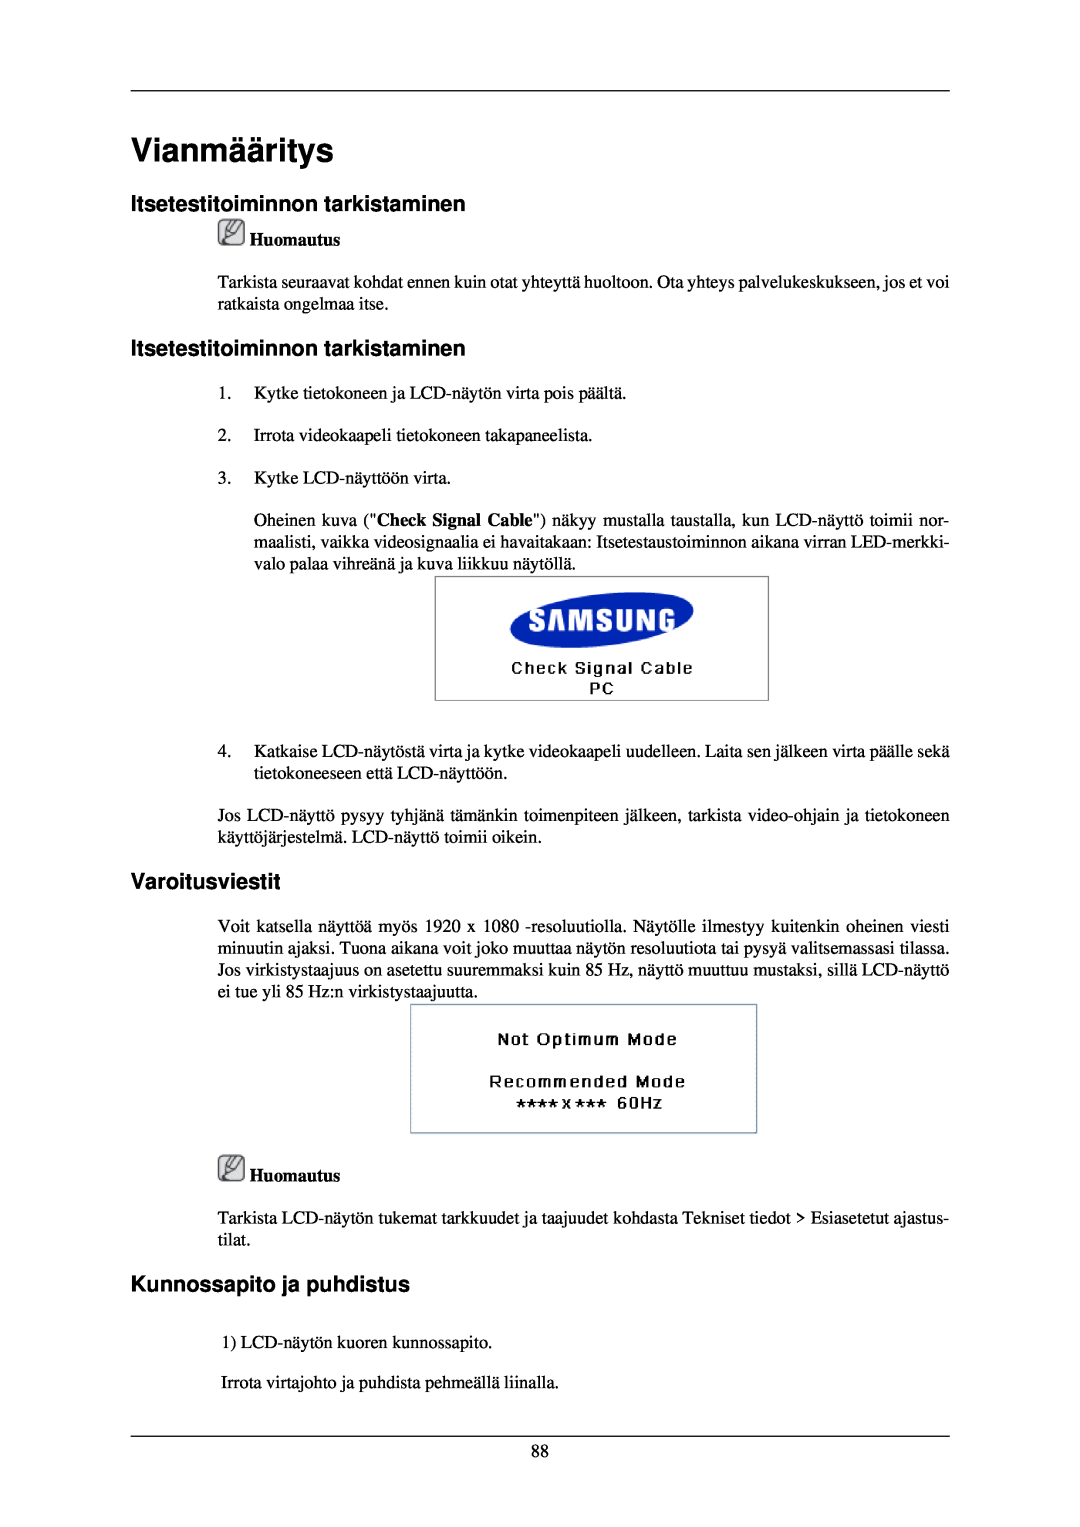 Samsung LH40TCQMBG/EN manual Vianmääritys, Itsetestitoiminnon tarkistaminen, Varoitusviestit, Kunnossapito ja puhdistus 